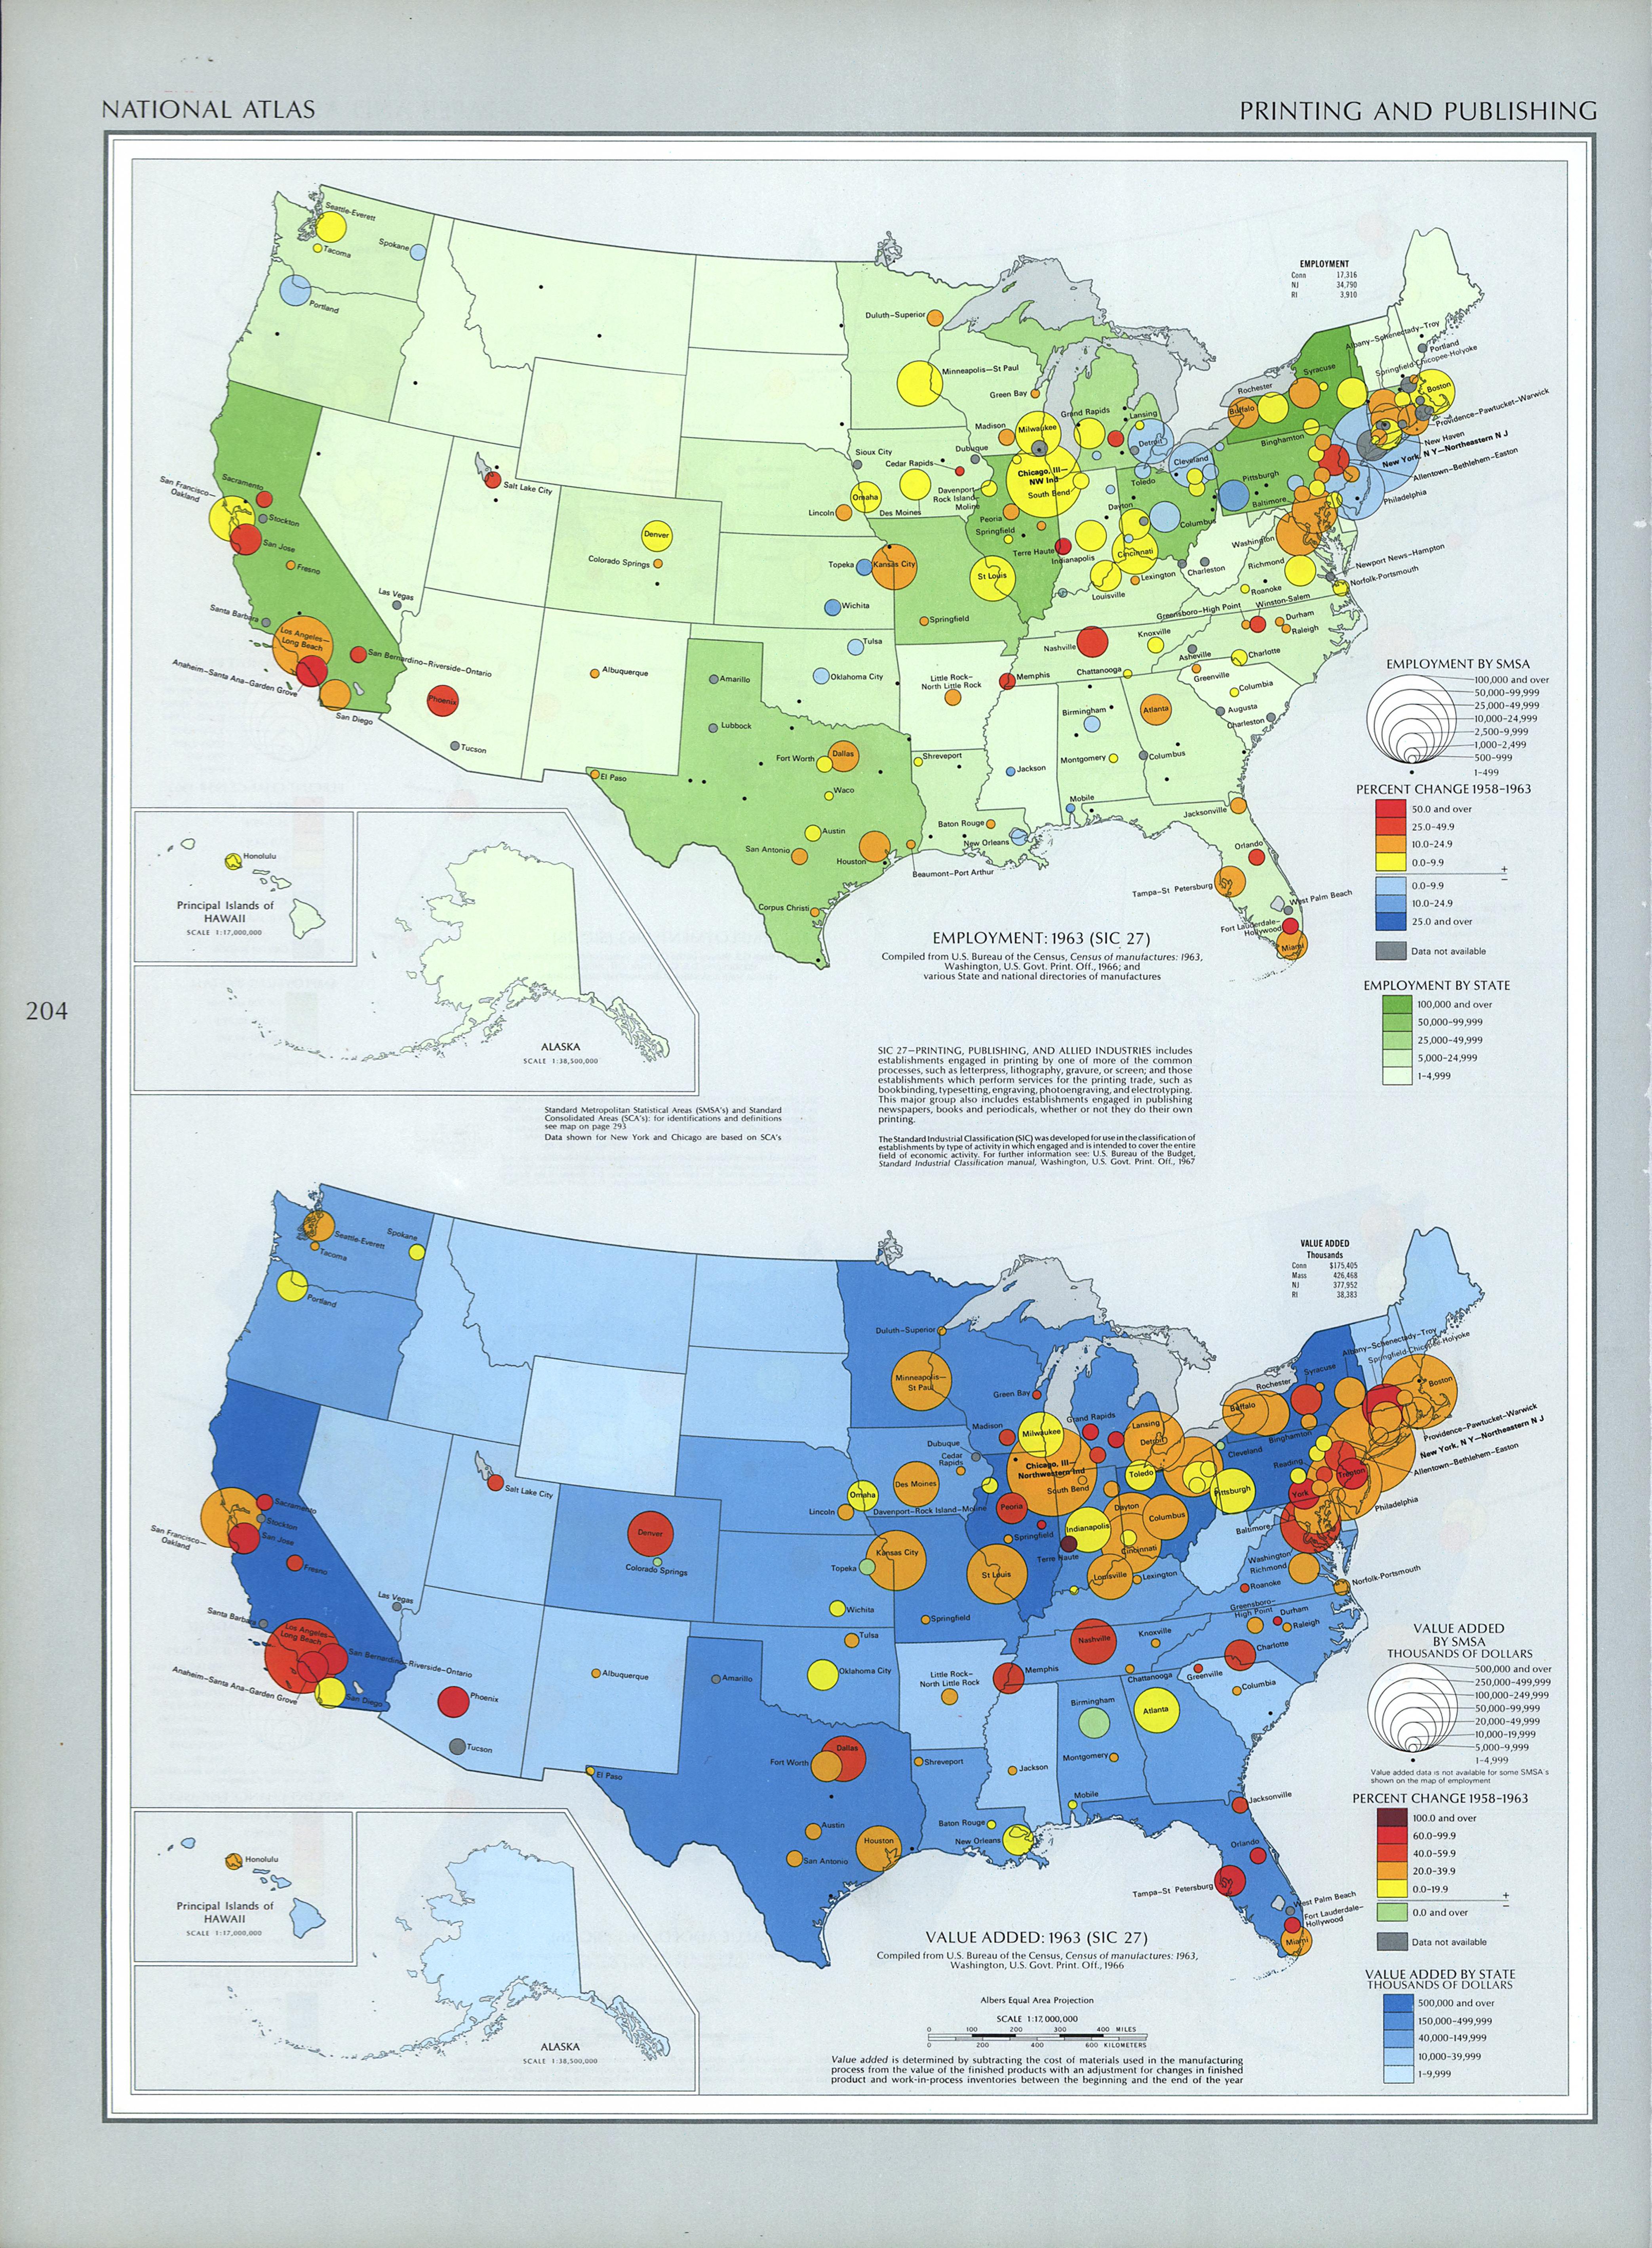 Mapa de la Industria de la Impresión y Publicación en Estados Unidos